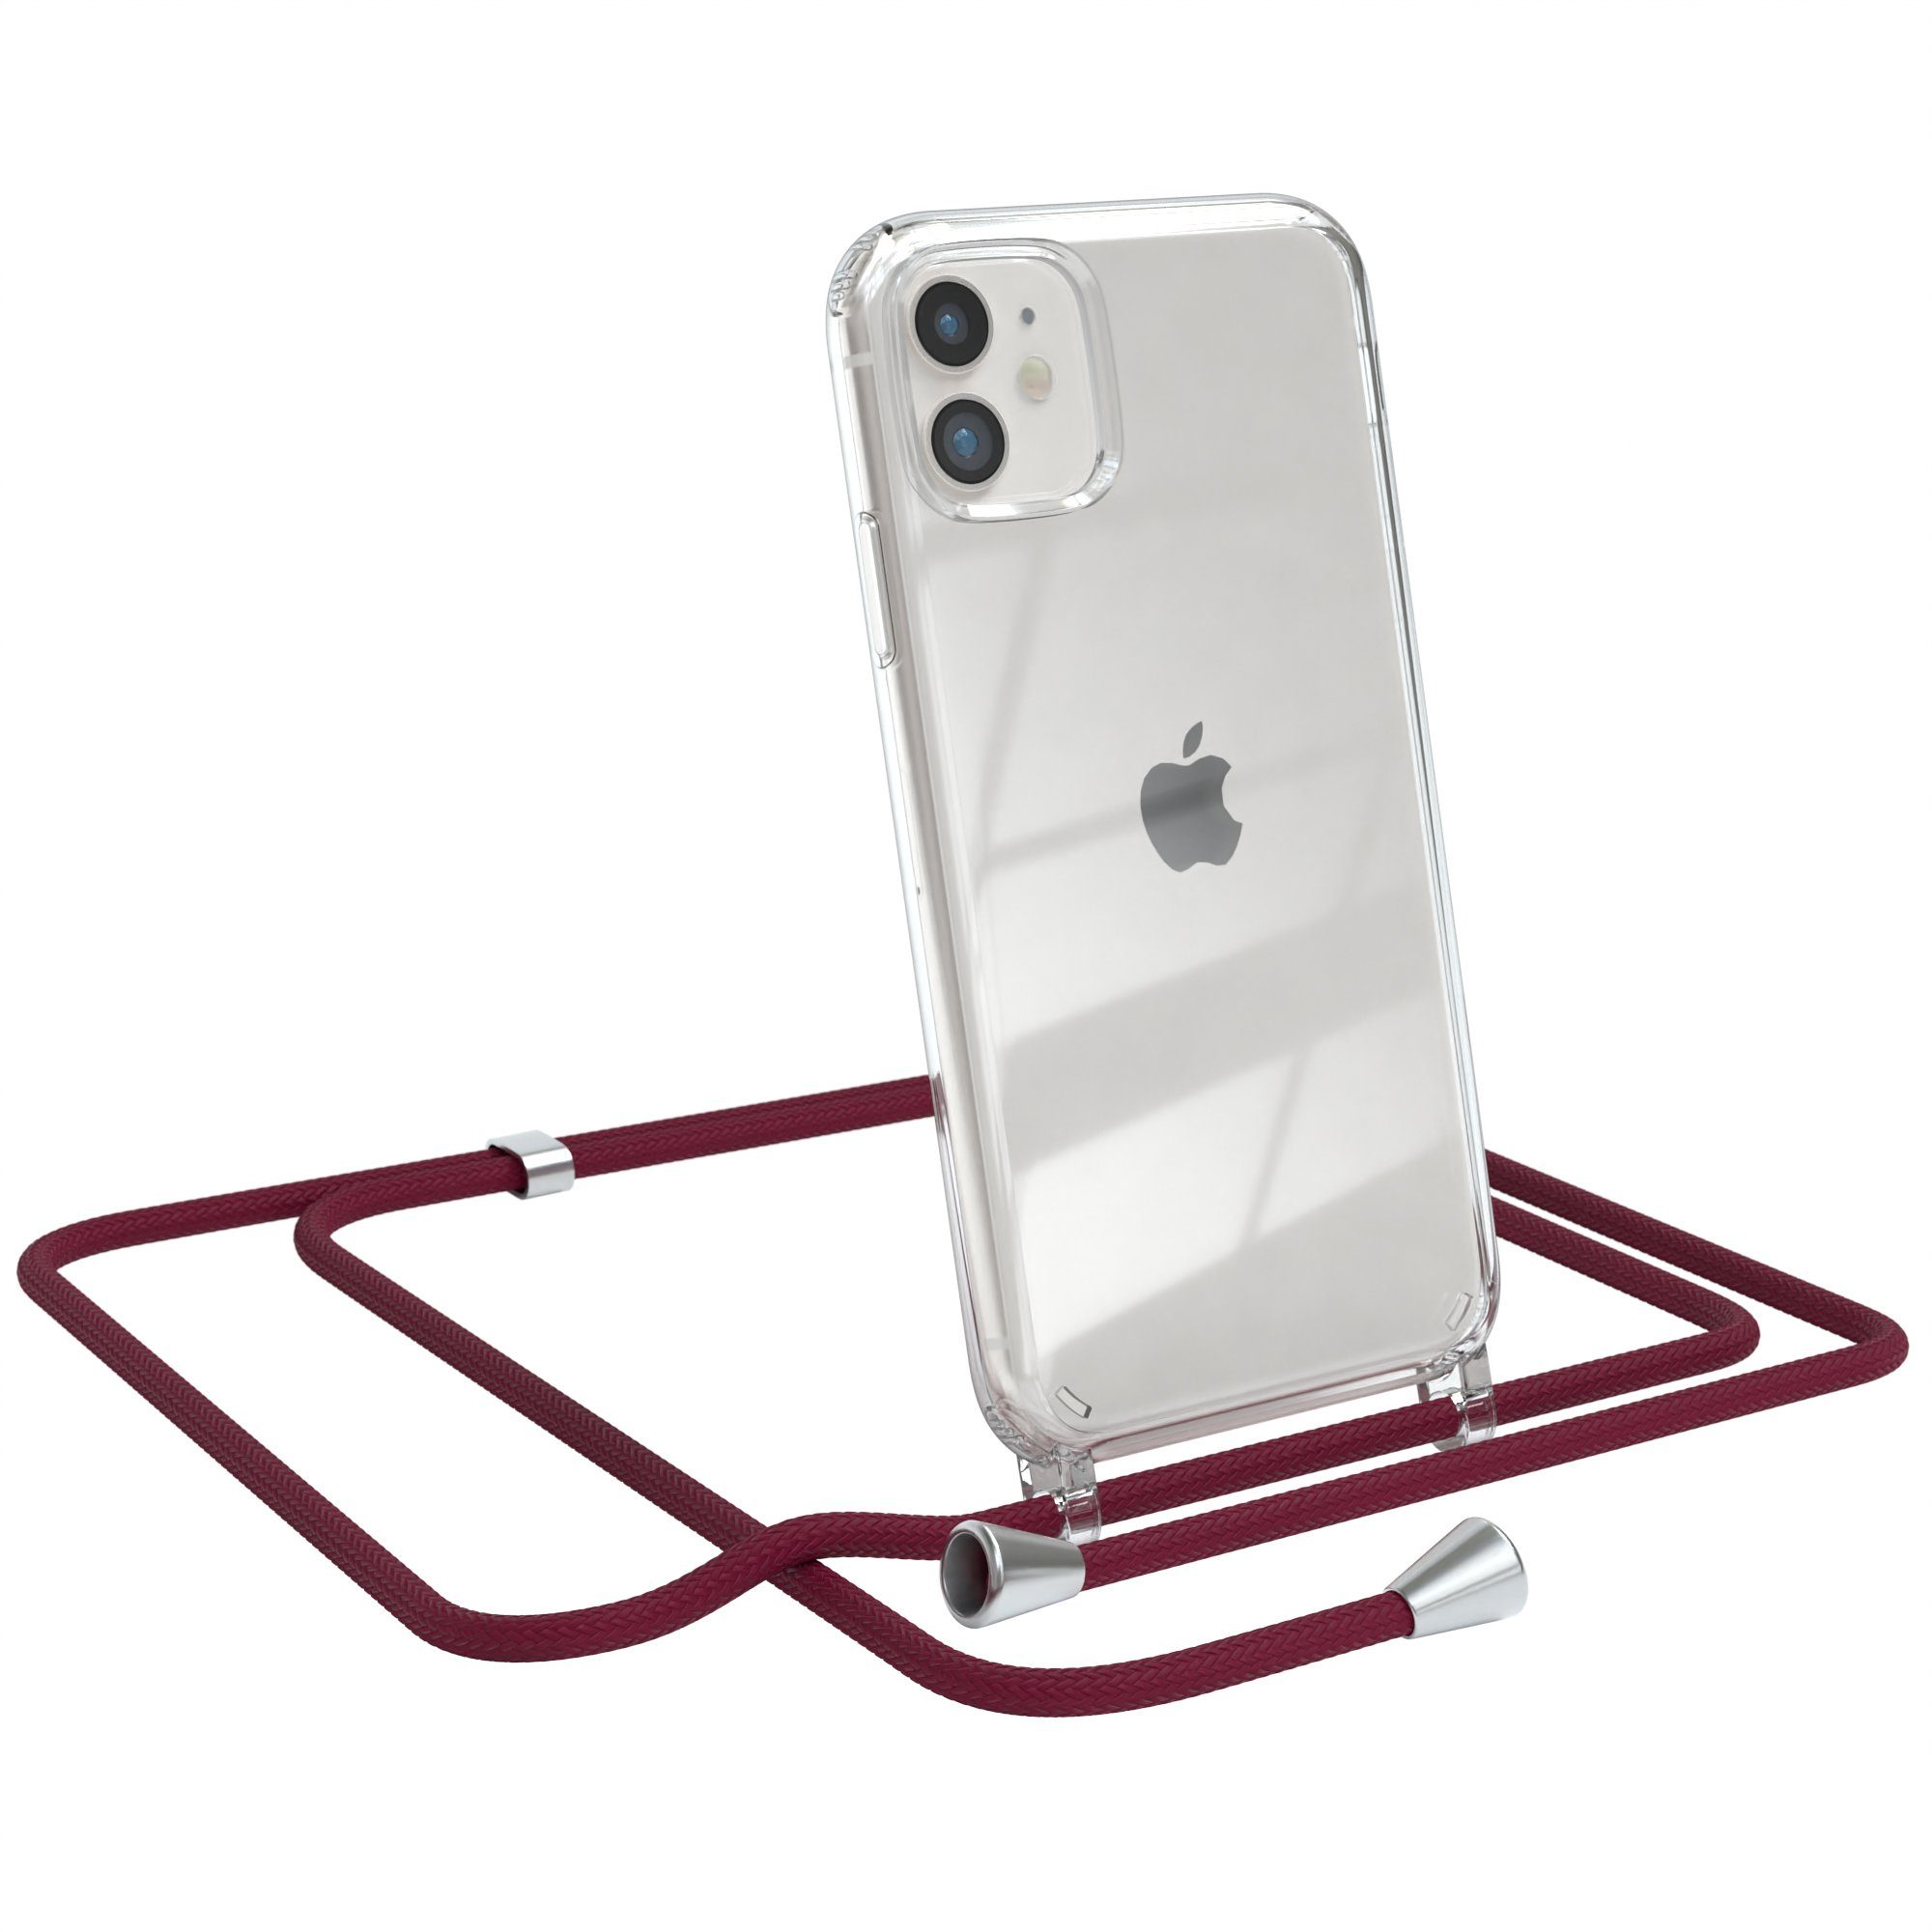 EAZY CASE Handykette Hülle mit Kette für Apple iPhone 11 6,1 Zoll, Silikonhülle durchsichtig mit Umhängeband Handytasche Bordeaux Rot